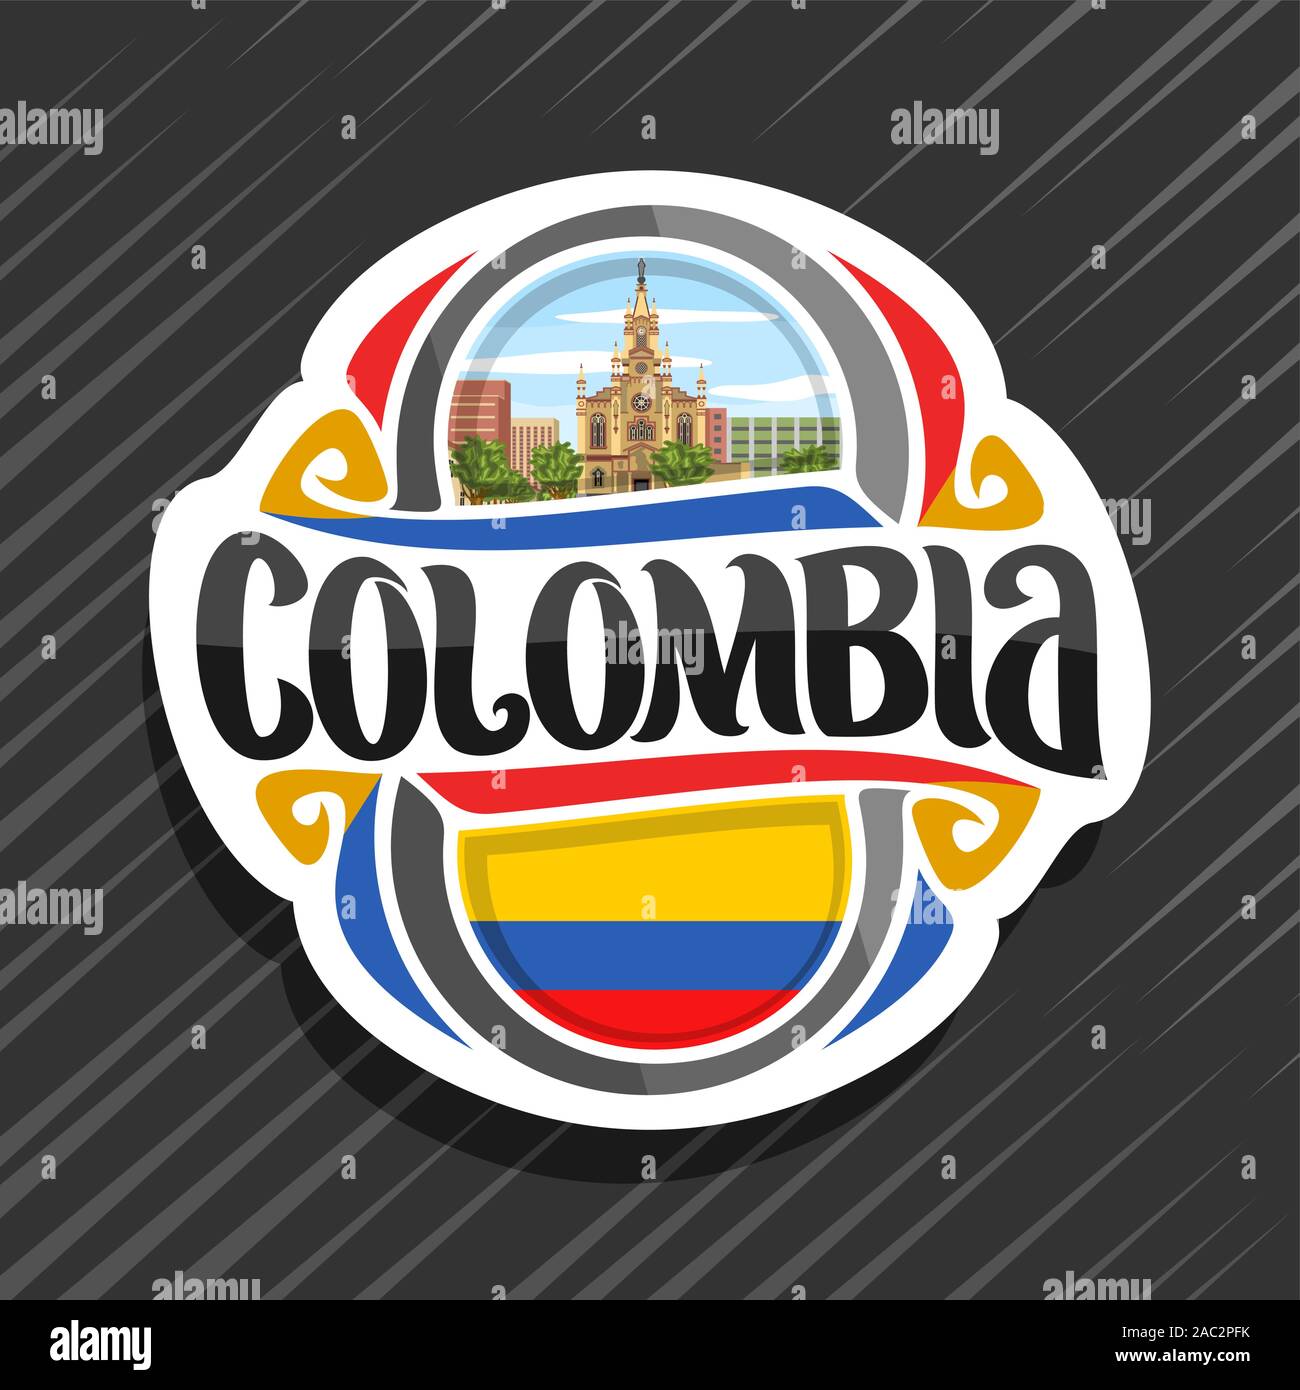 Logo Vector pour la Colombie, pays aimant frigo avec drapeau colombien, pinceau original typeface pour mot Colombie, Colombie - symbole national Naza Jésus Illustration de Vecteur